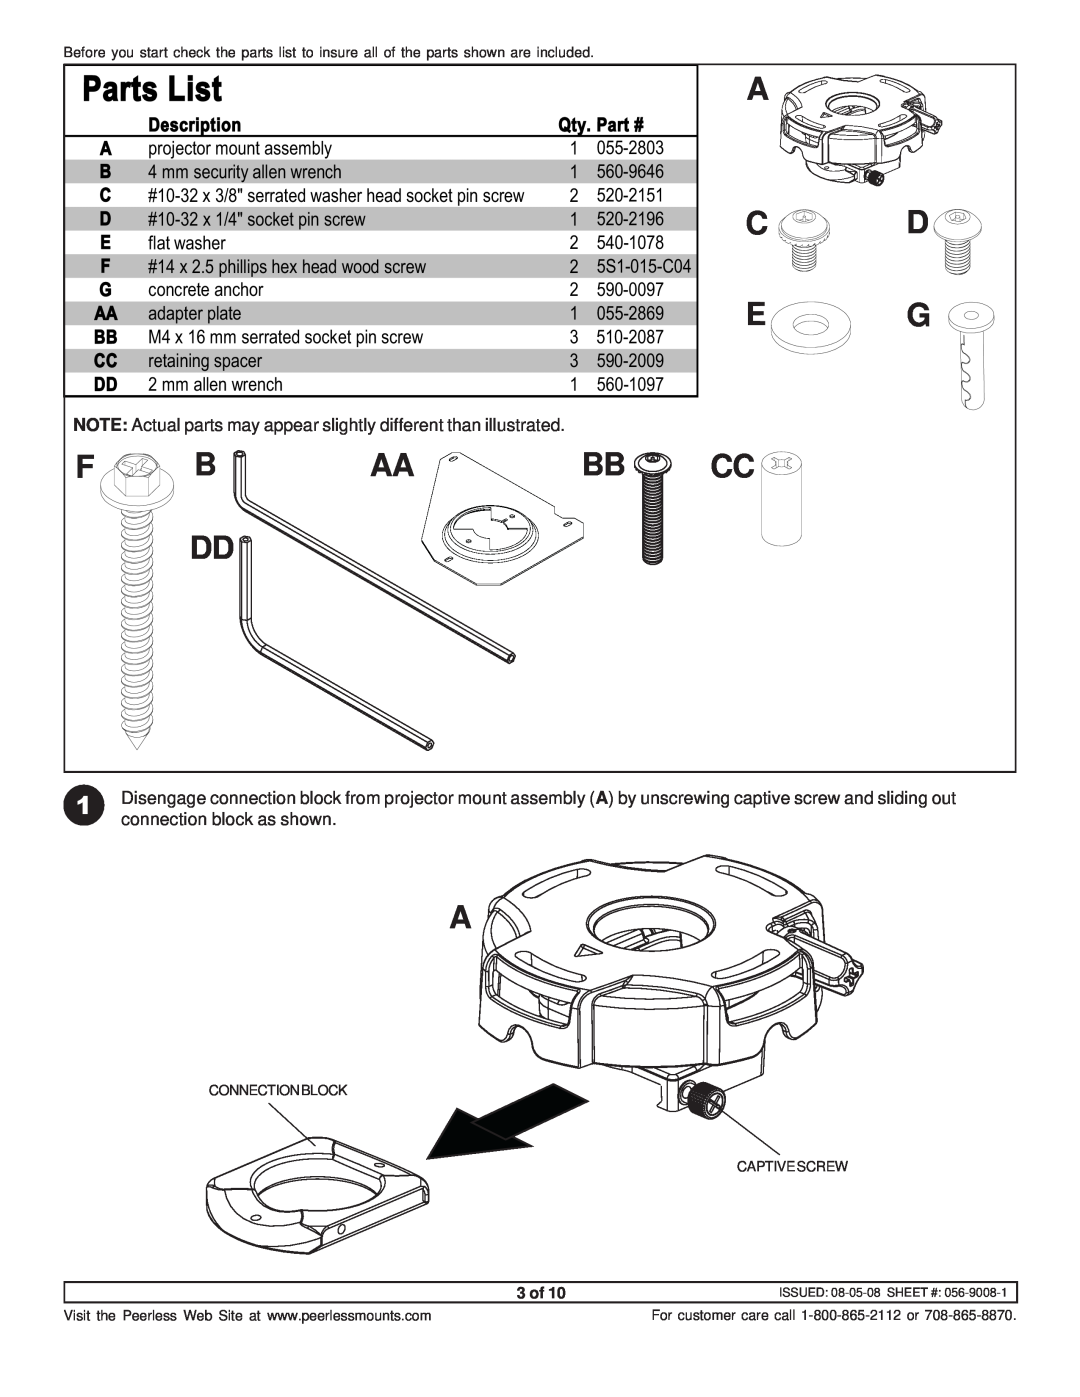 NEC NP600CM manual A C D E G, Parts List, Description, Qty 